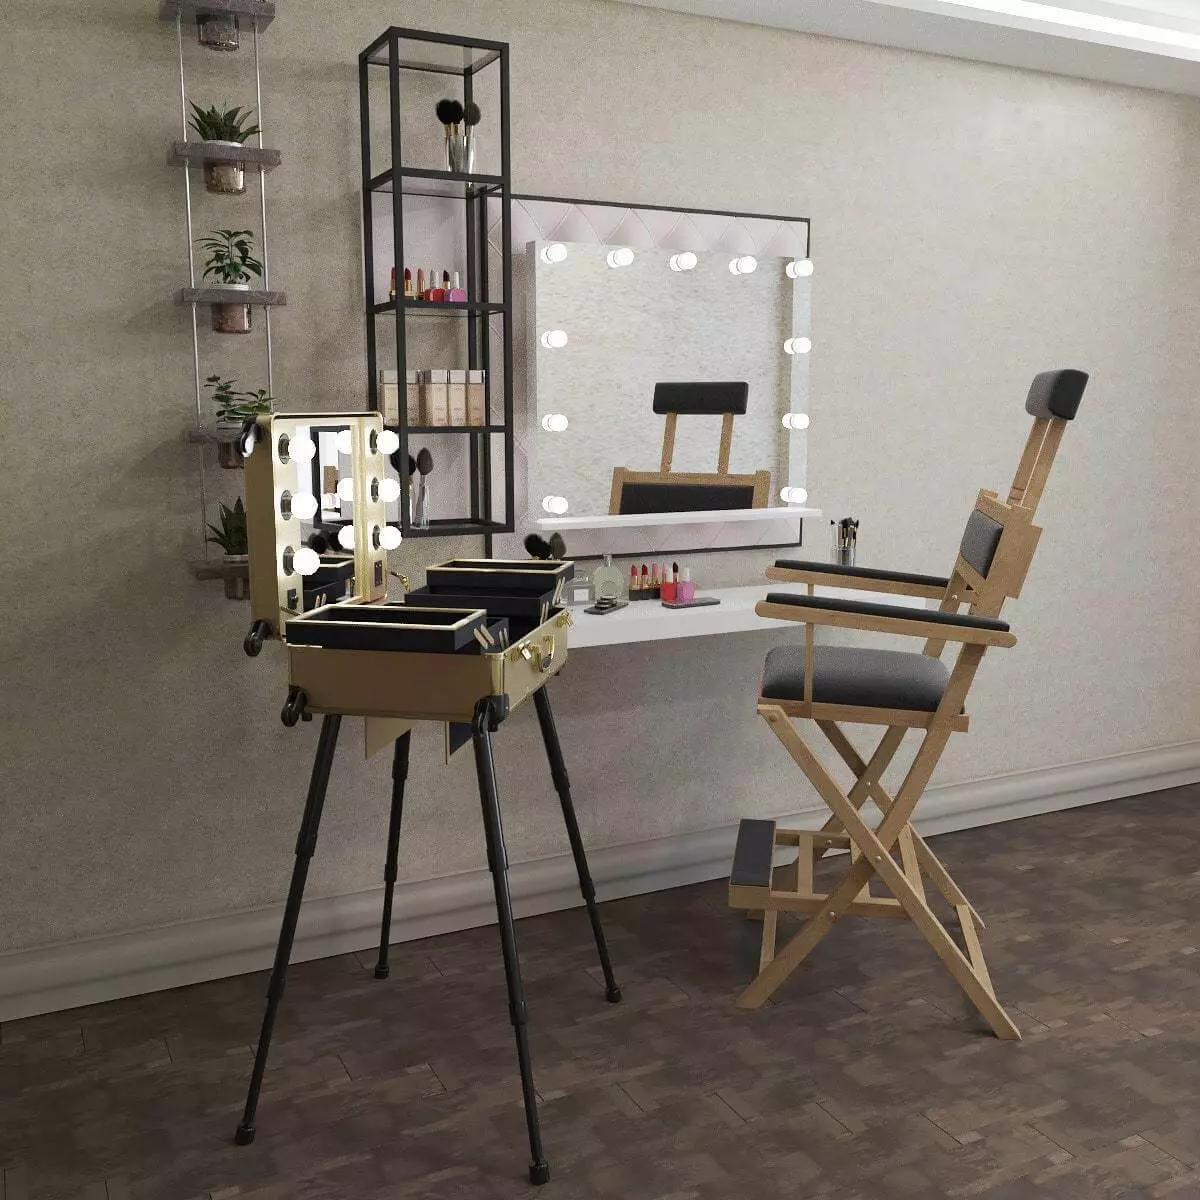 مكان العمل من eyebrowsist (36 صور): اختيار كرسي مع مساند الرأس وغيرها من الأثاث، وتصميم المكتب في المنزل. كيفية تجهيز؟ 7568_9